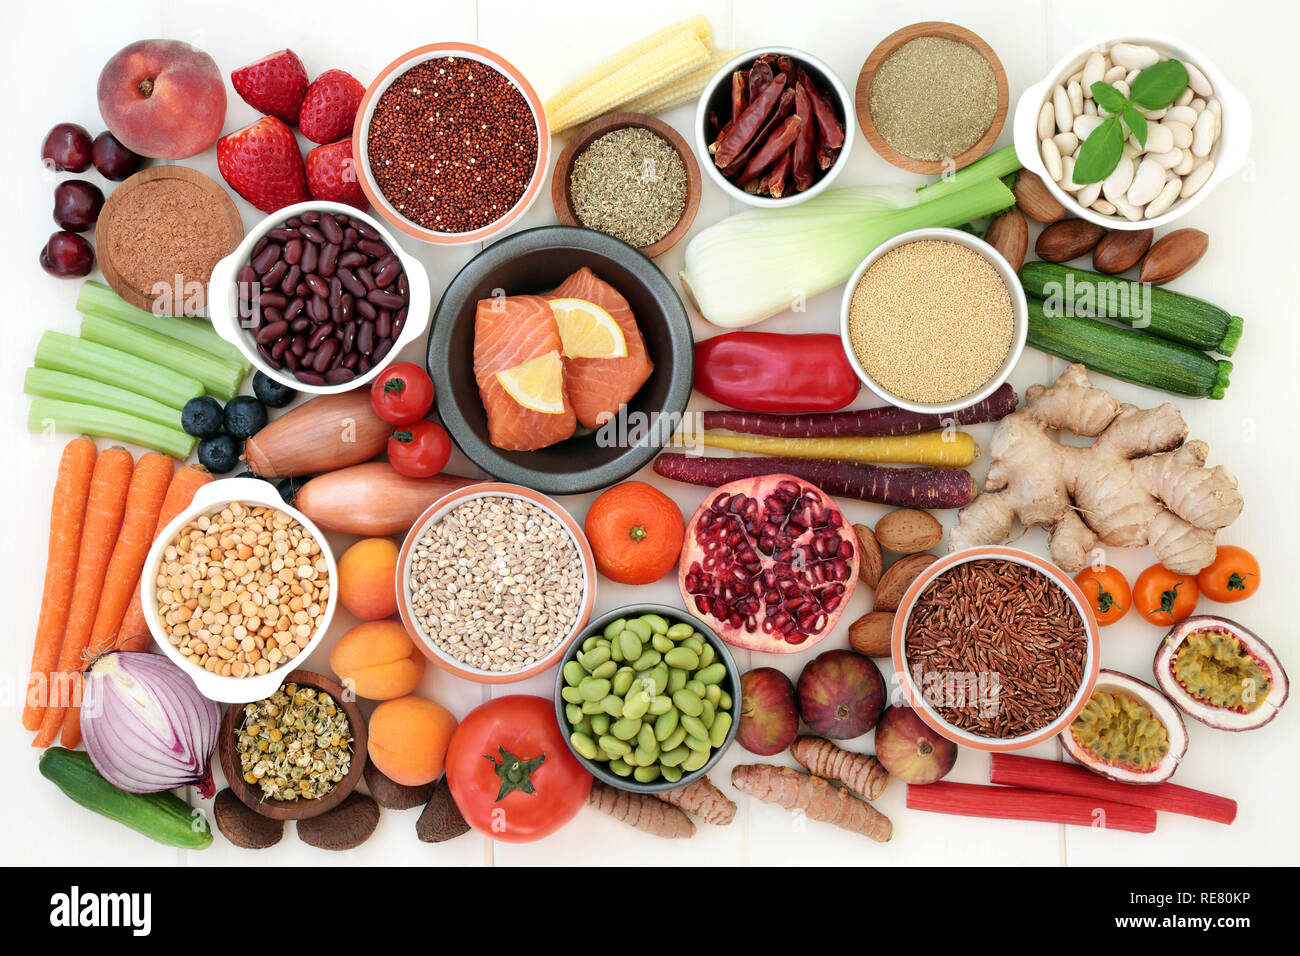 Gesundheit Nahrung für Schlusses Gewicht mit Fisch, Hülsenfrüchte, Obst und Gemüse, Körner, Nüsse, zu ergänzen, zu Pulver, Kräuter und pflanzliche Arzneimittel. Stockfoto